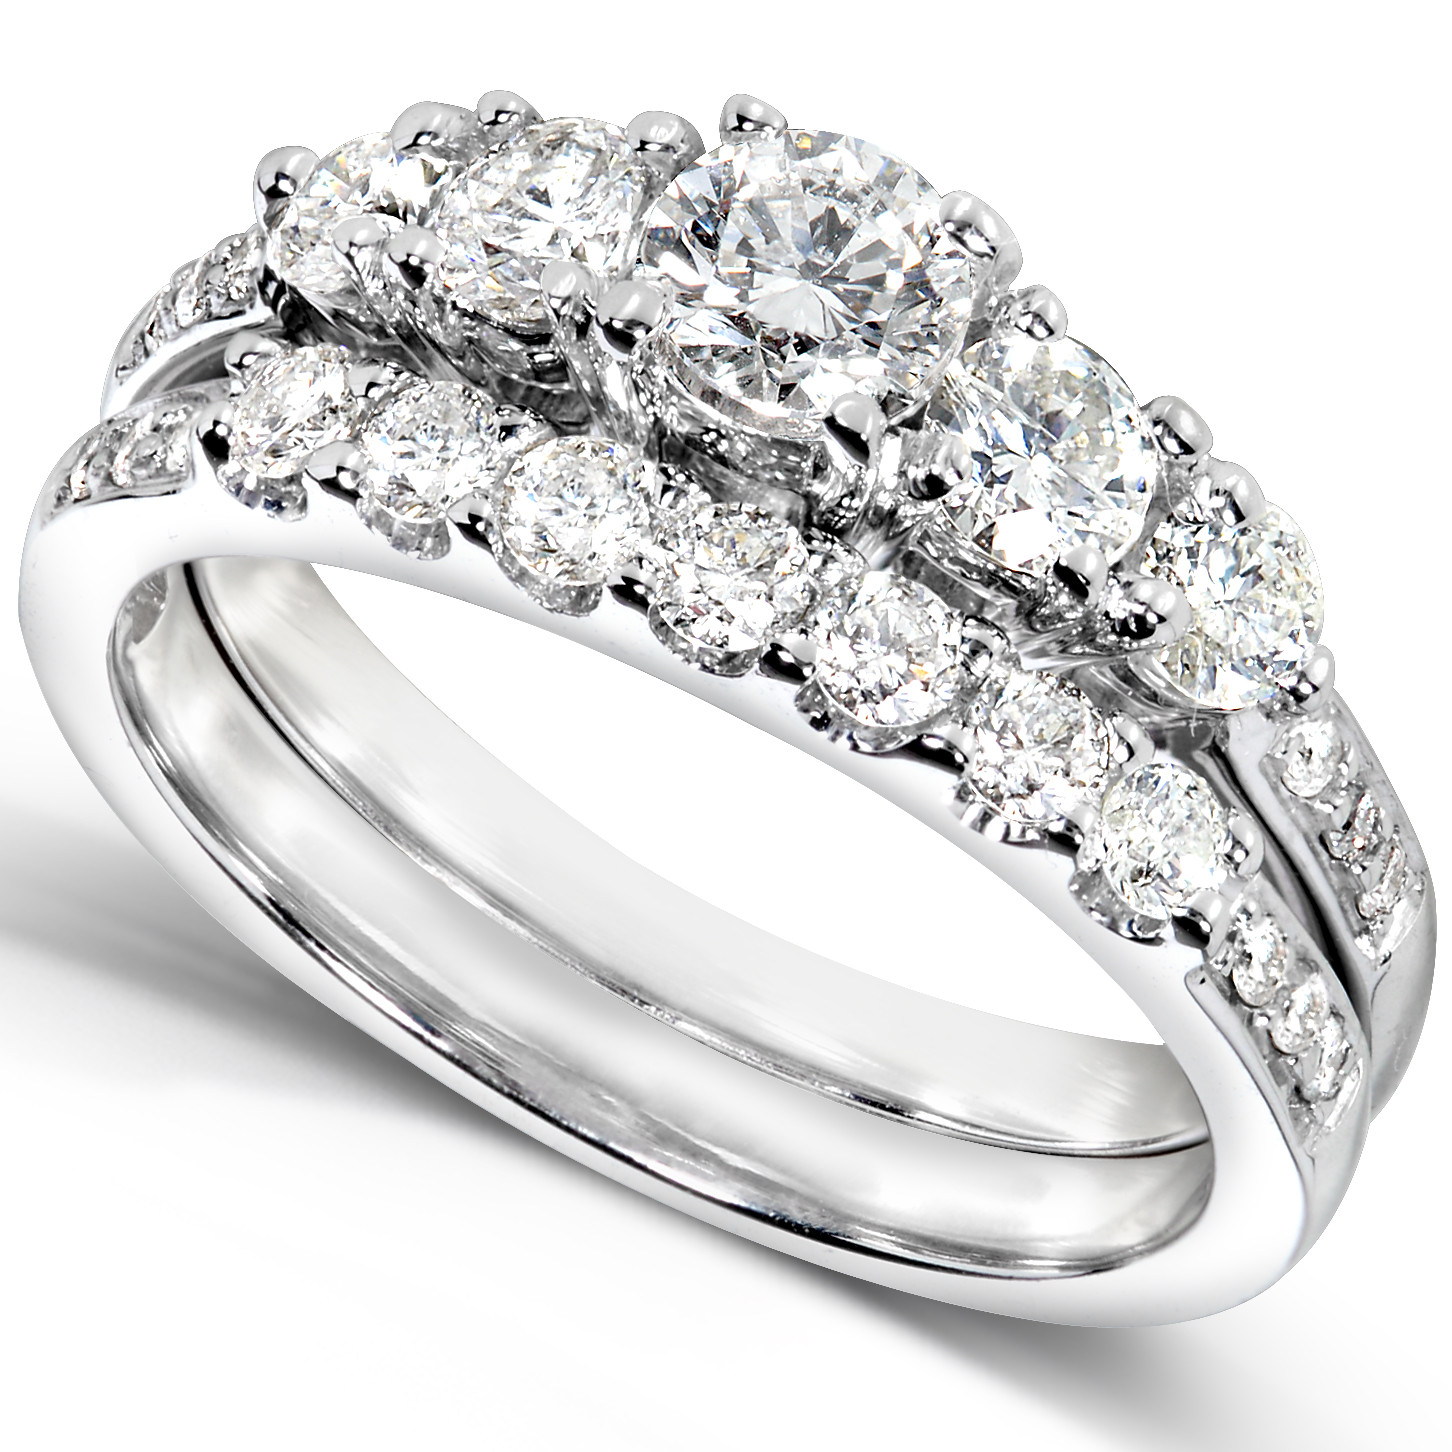 Kmart Wedding Rings
 Kmart jewelry wedding rings beautifulearthja